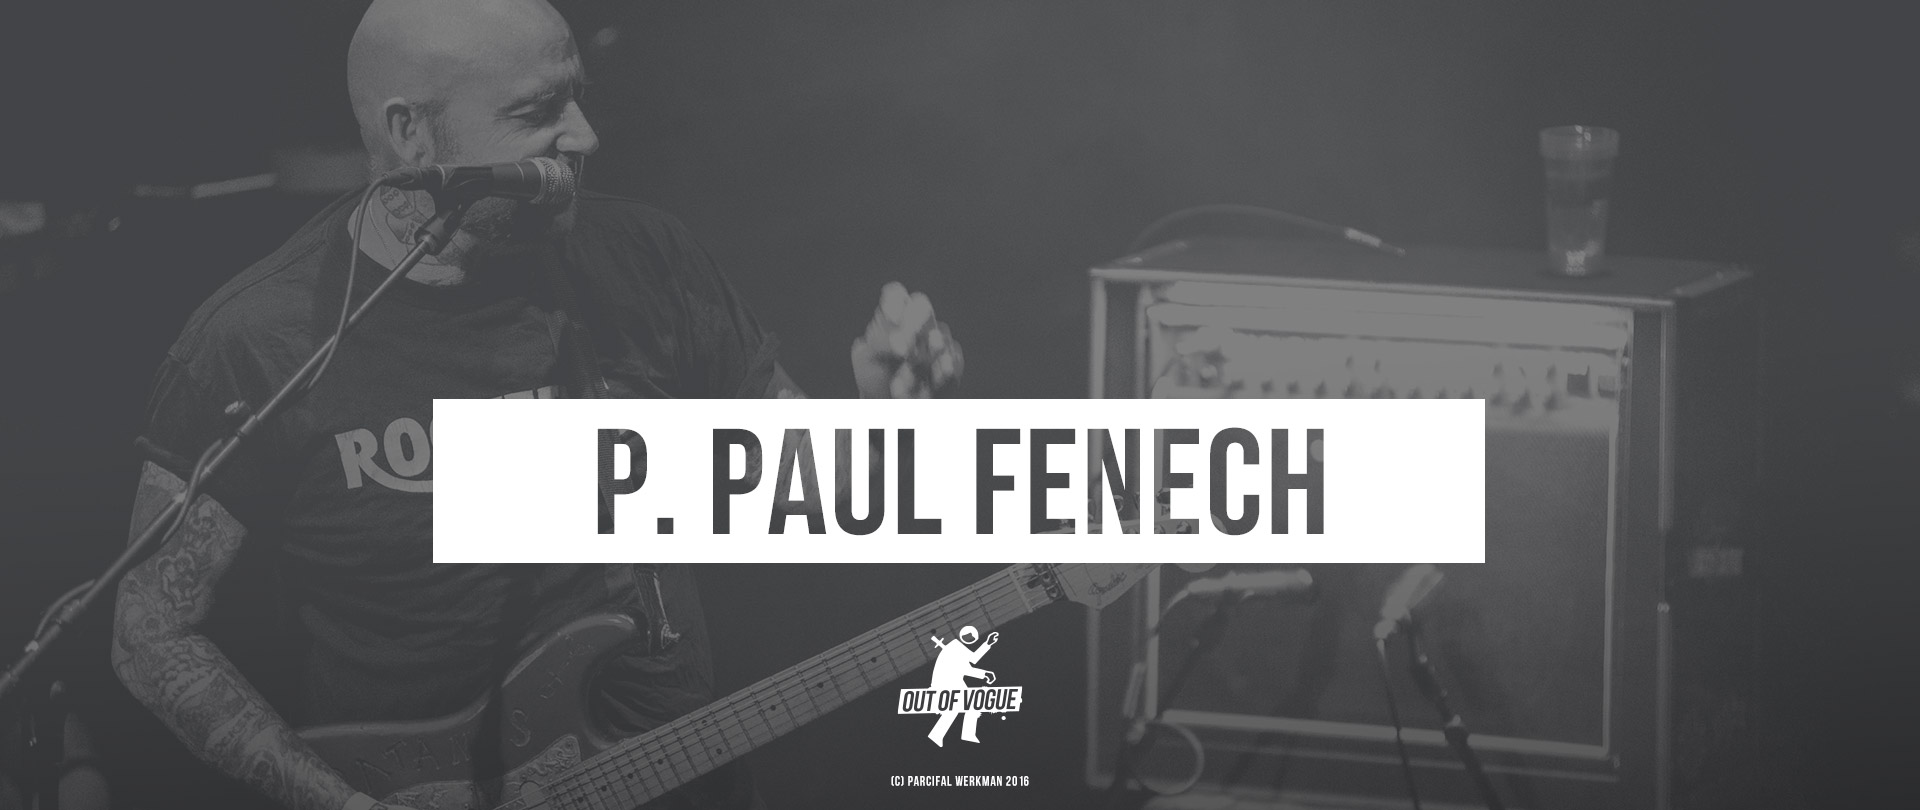 P. Paul Fenech at OUT OF VOGUE SHOP / DE